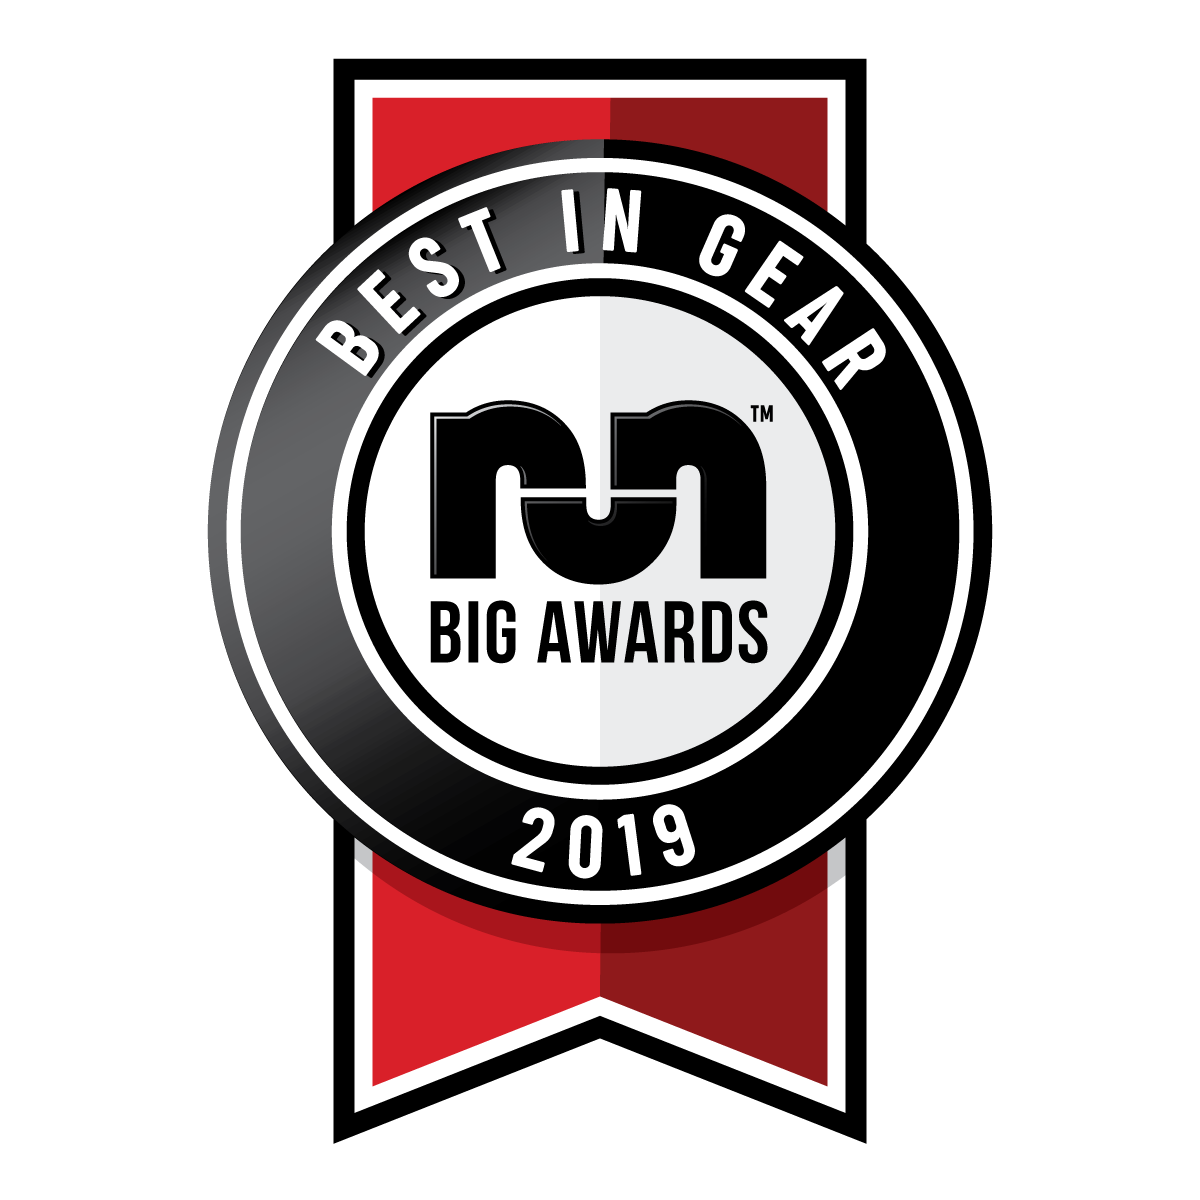 Best in gear big awards 2019